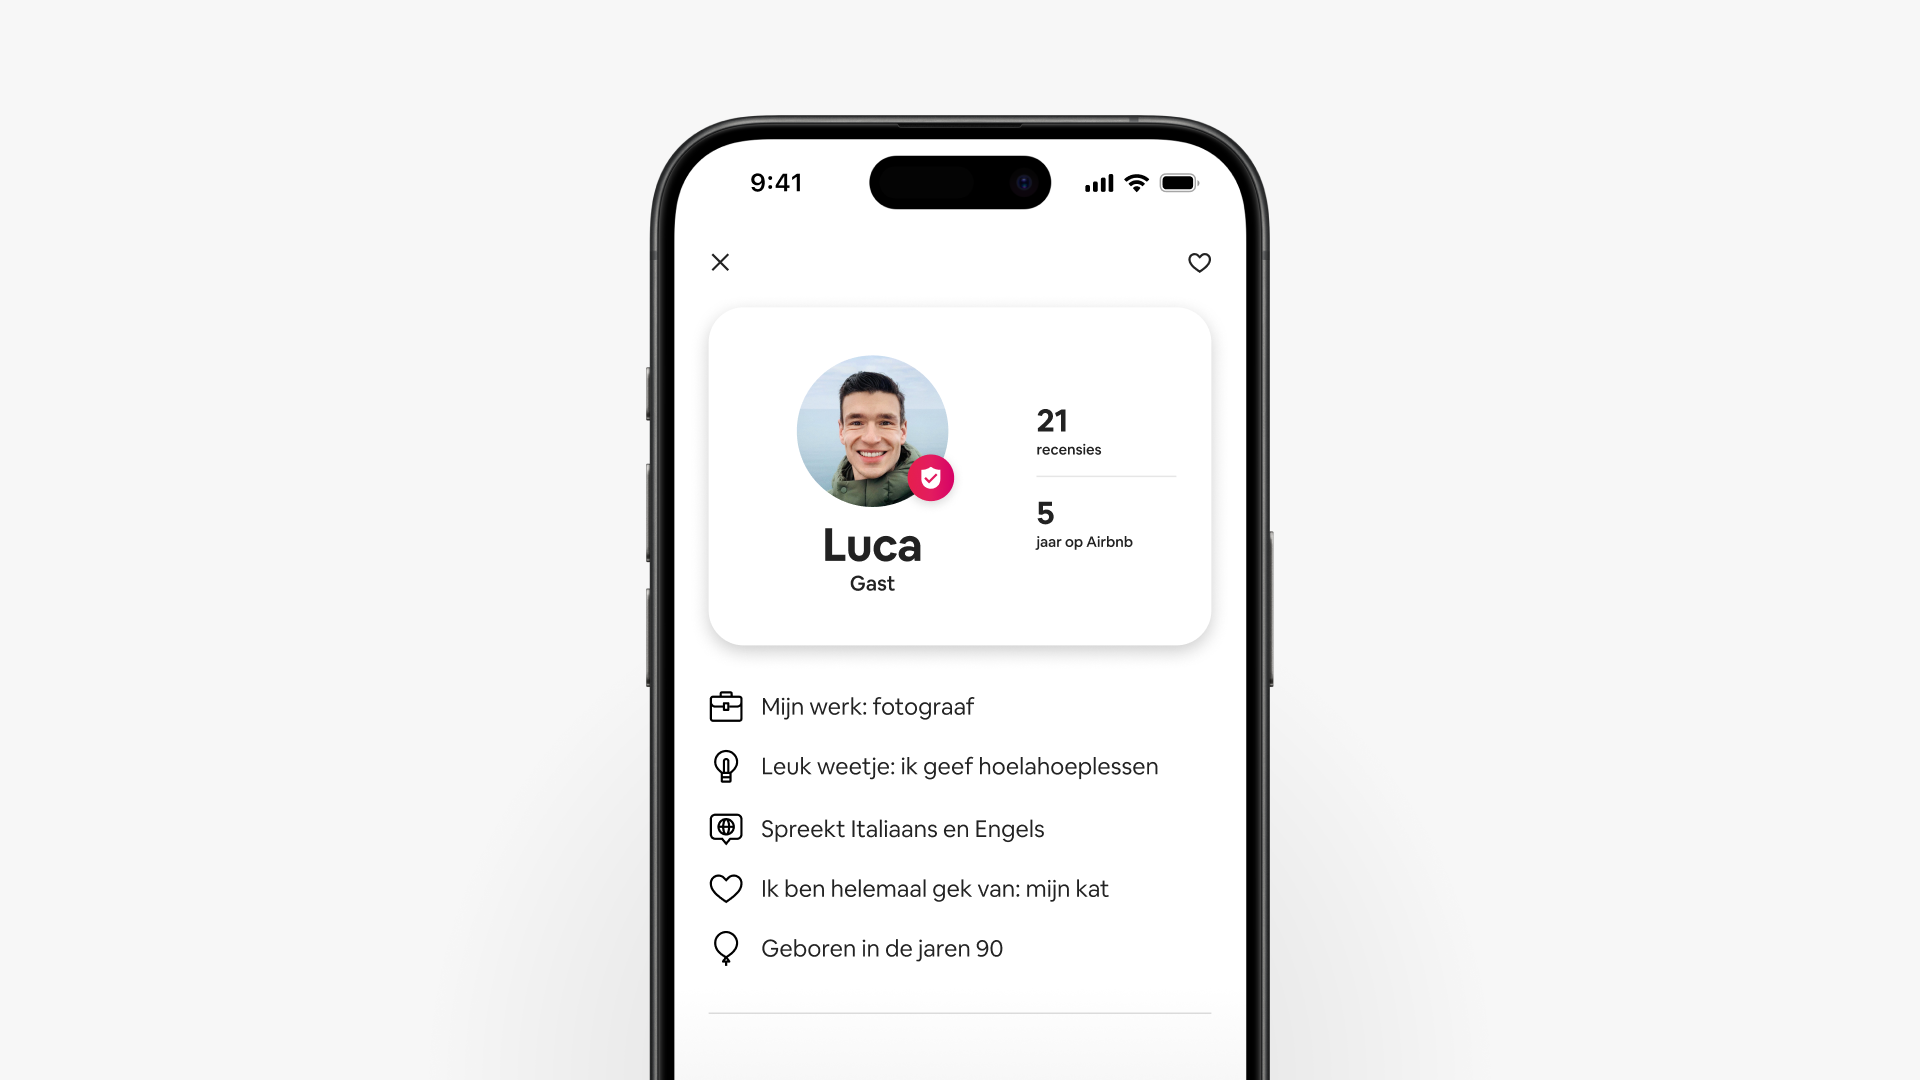 Een screenshot van een smartphone met het verbeterde Airbnb-gastprofiel van Luca, compleet met recensies en aanvullende informatie over Luca.